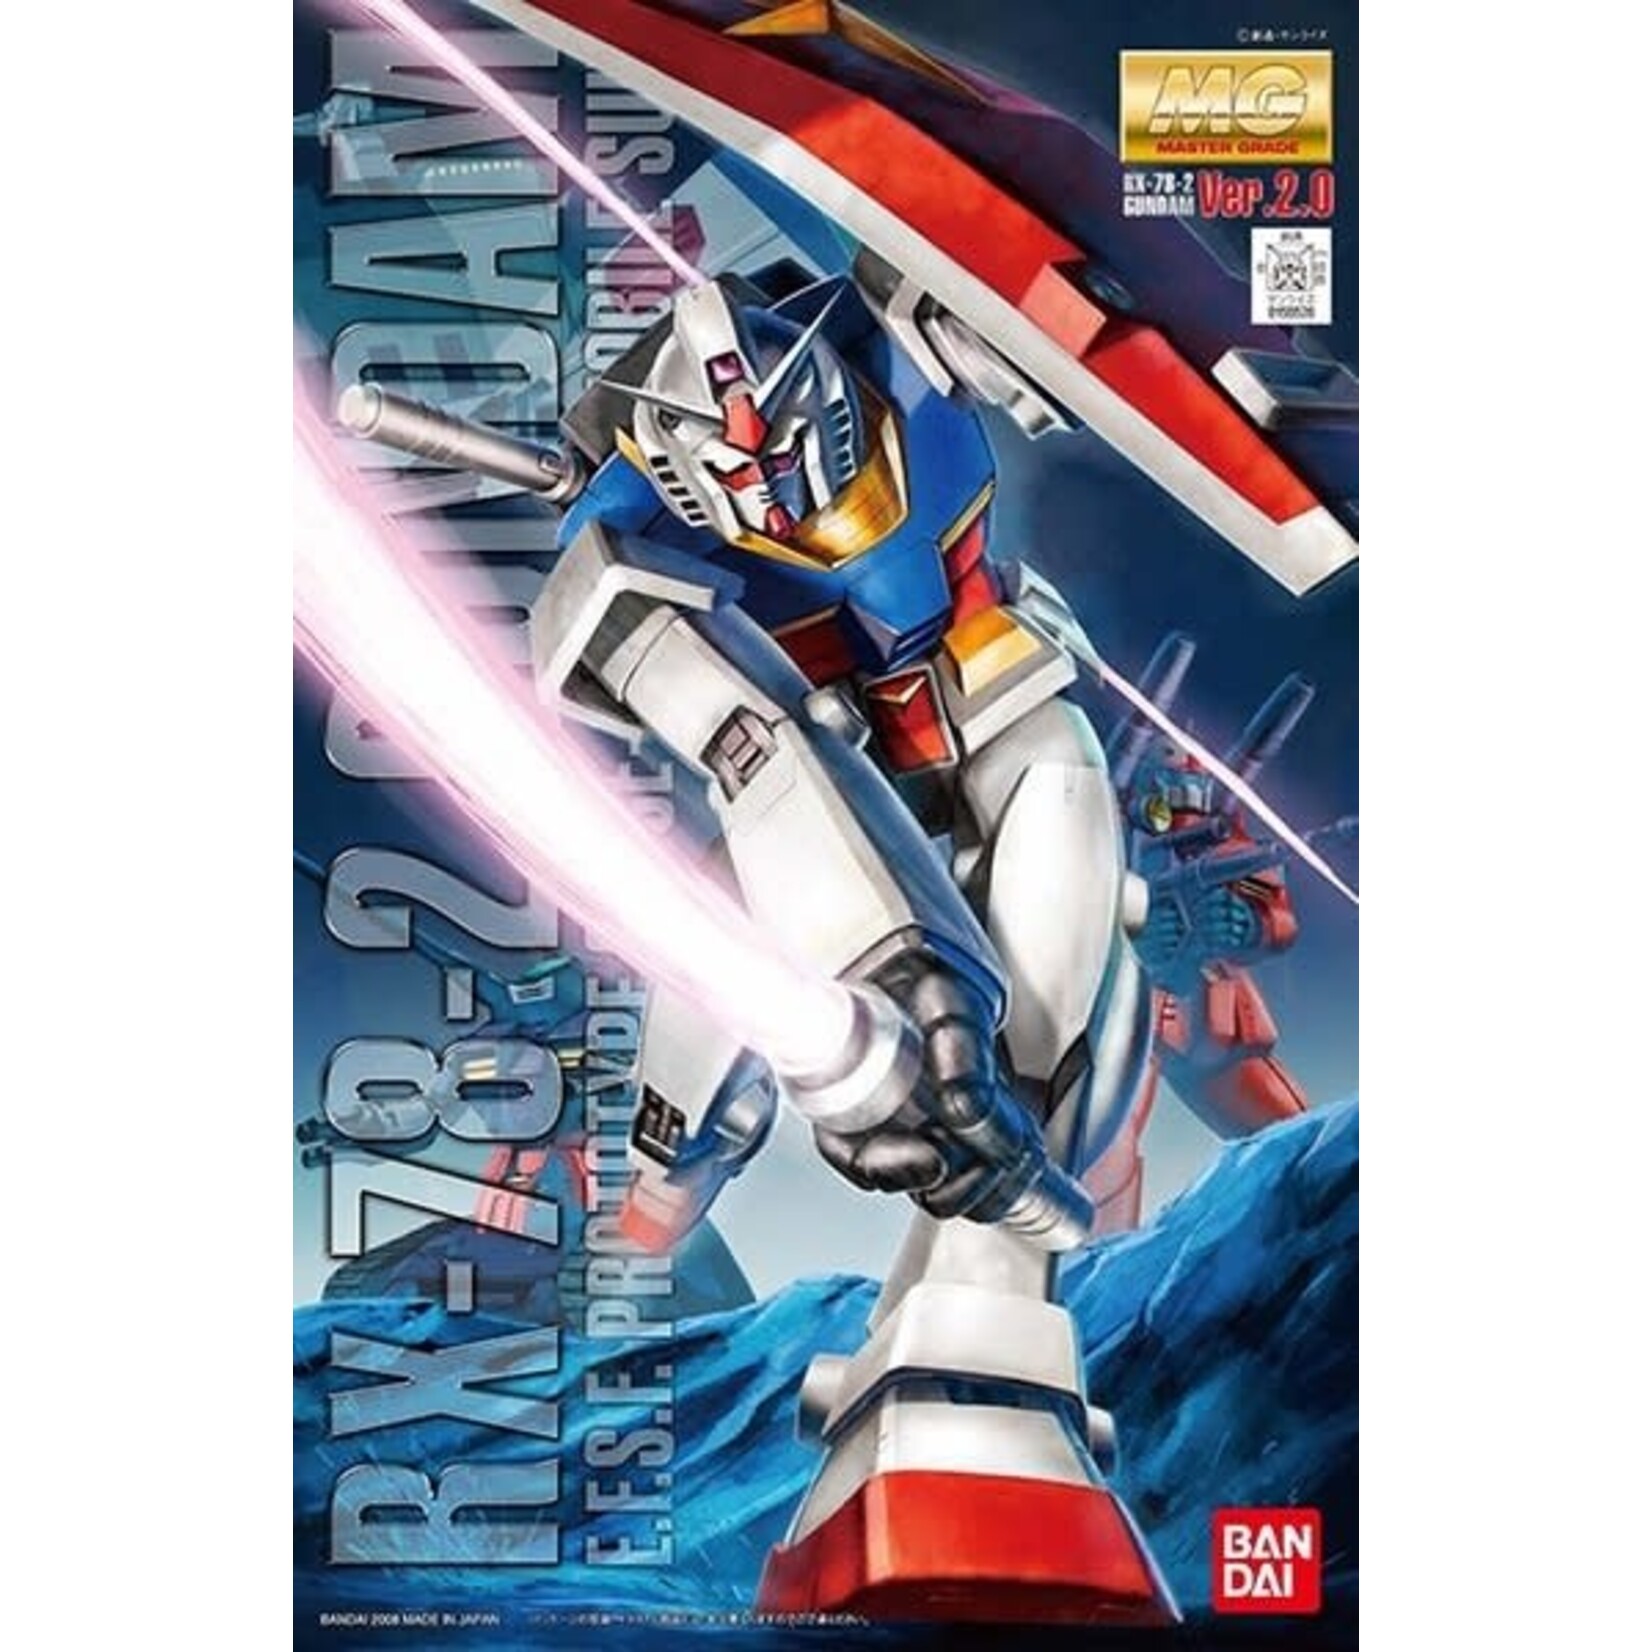 Bandai Bandai MG 1/100 RX-78-2 Gundam Ver.2.0 'Mobile Suit Gundam'